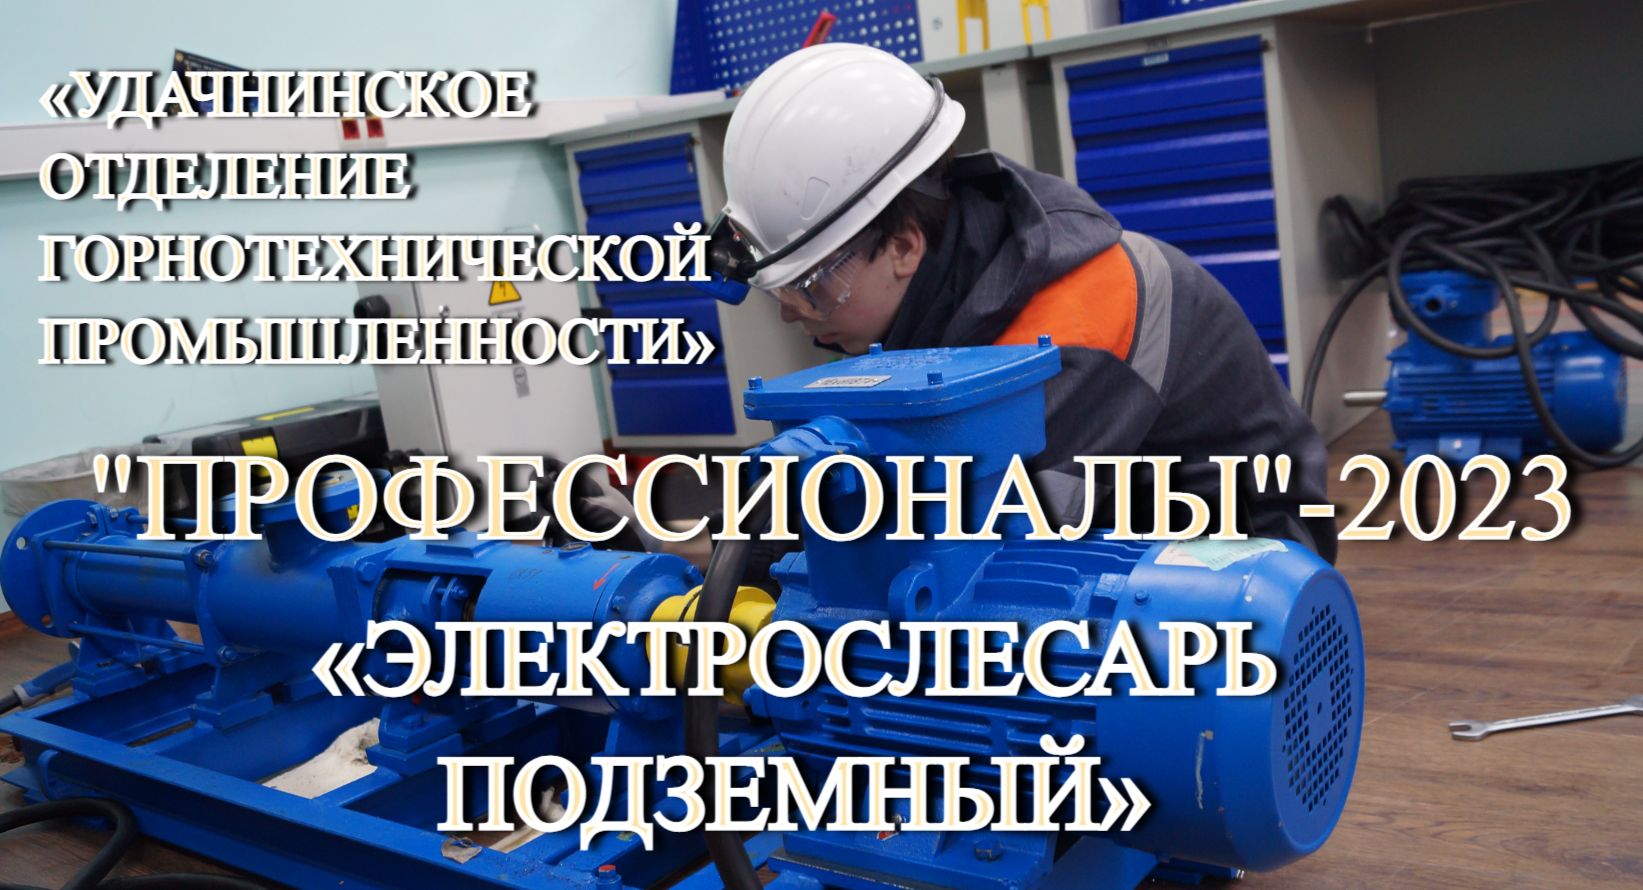 Завершающий день РЧ «Профессионалы»-2023 по компетенции «Электрослесарь подземный» в «Удачнинском